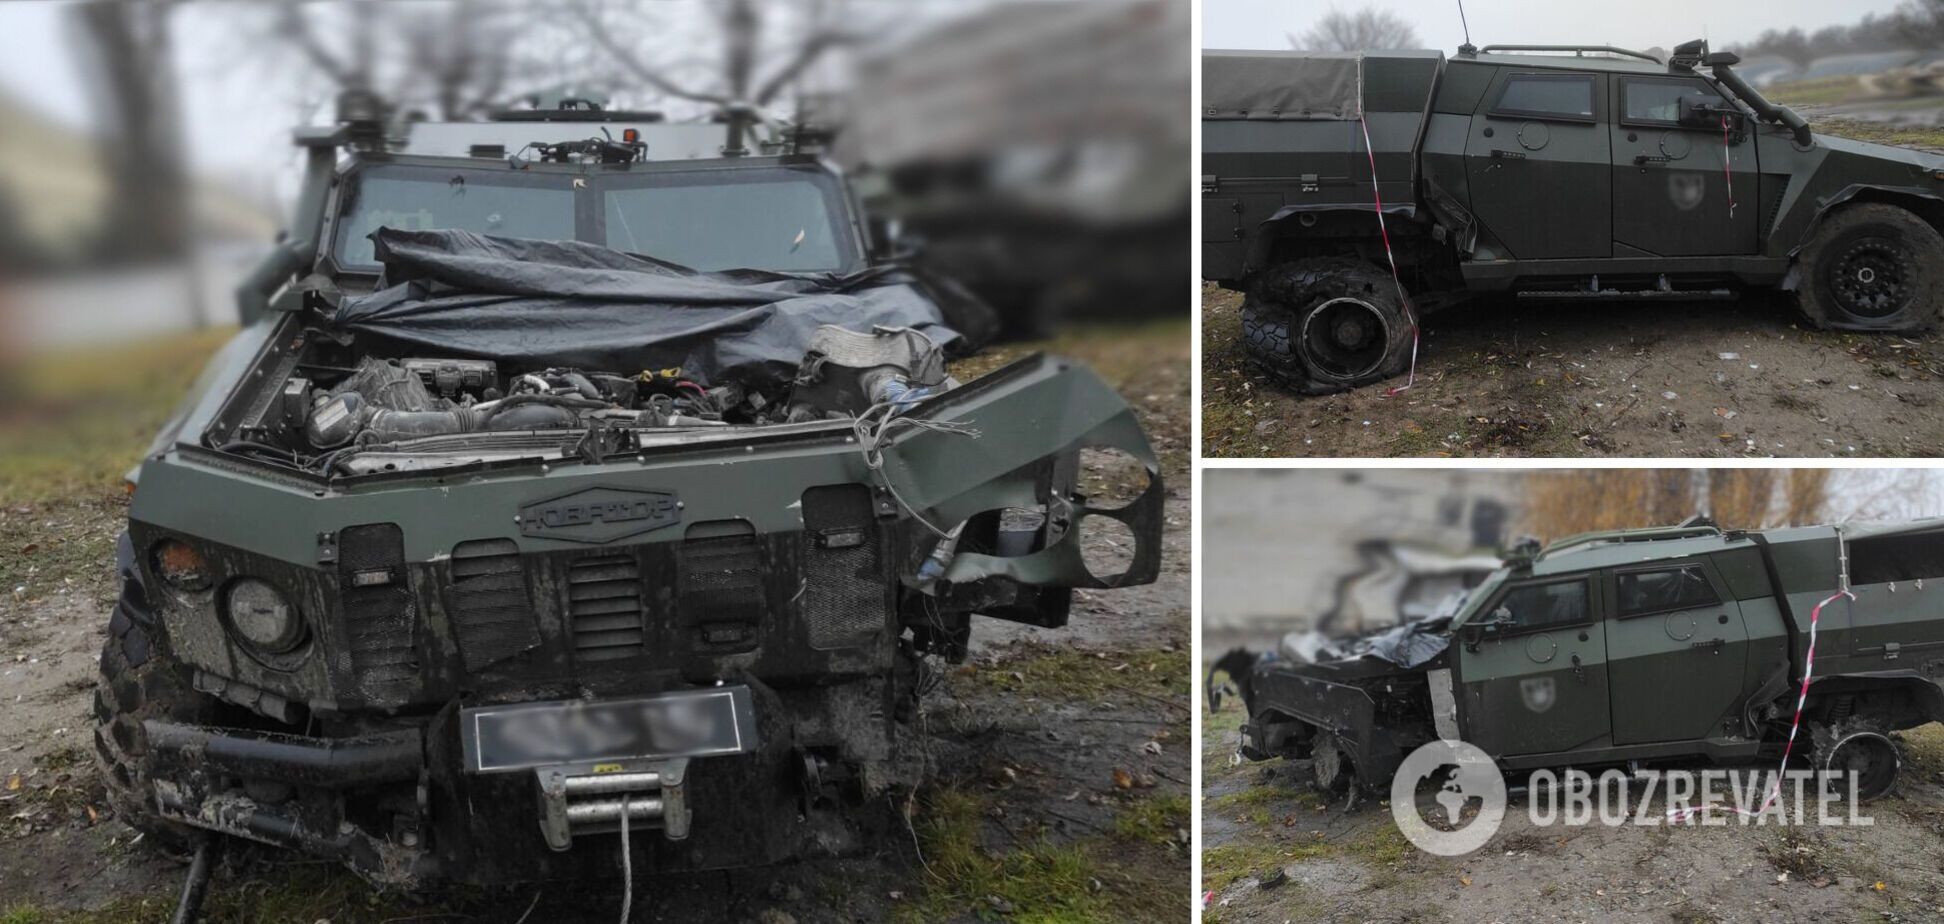 'Бронекапсула выдержала подрыв': украинский 'Новатор' наехал на мину, но экипаж уцелел. Фото